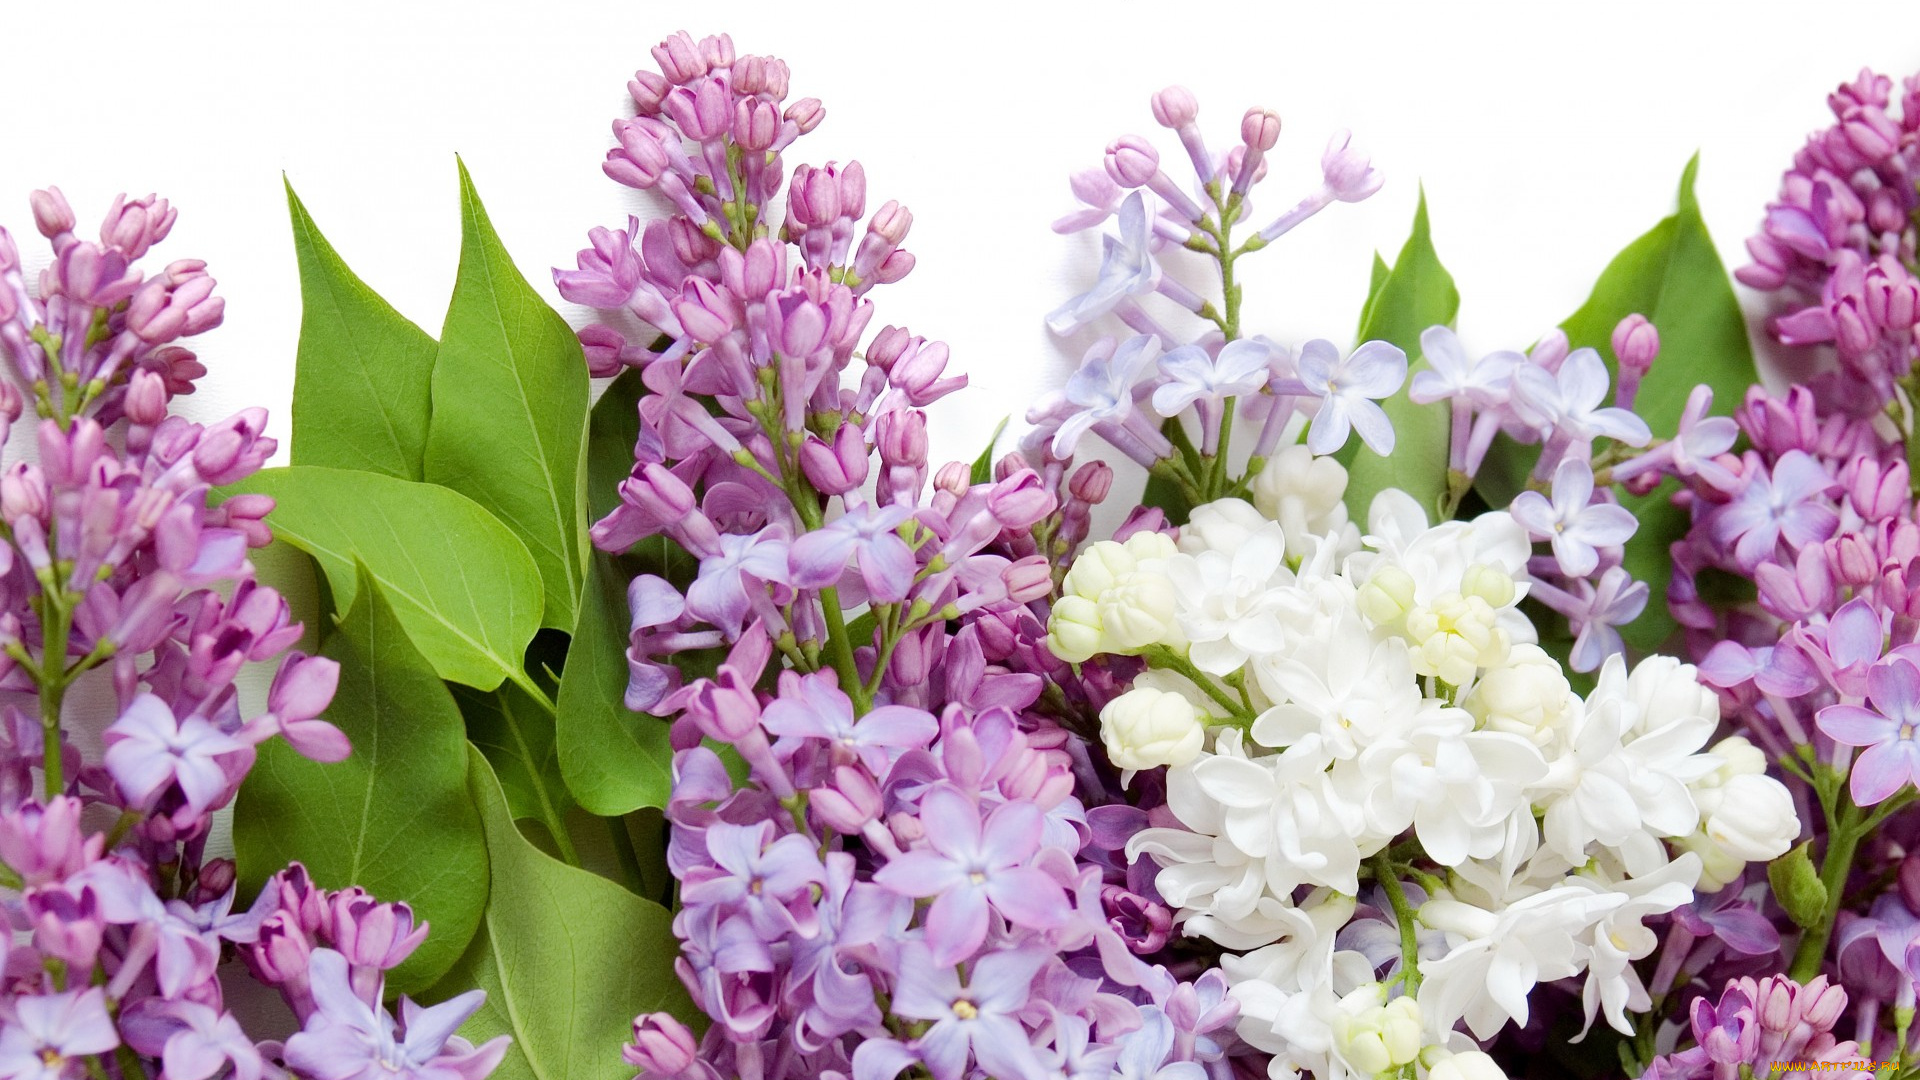 цветы, сирень, весна, белая, фиолетовая, spring, flowers, lilac, white, purple